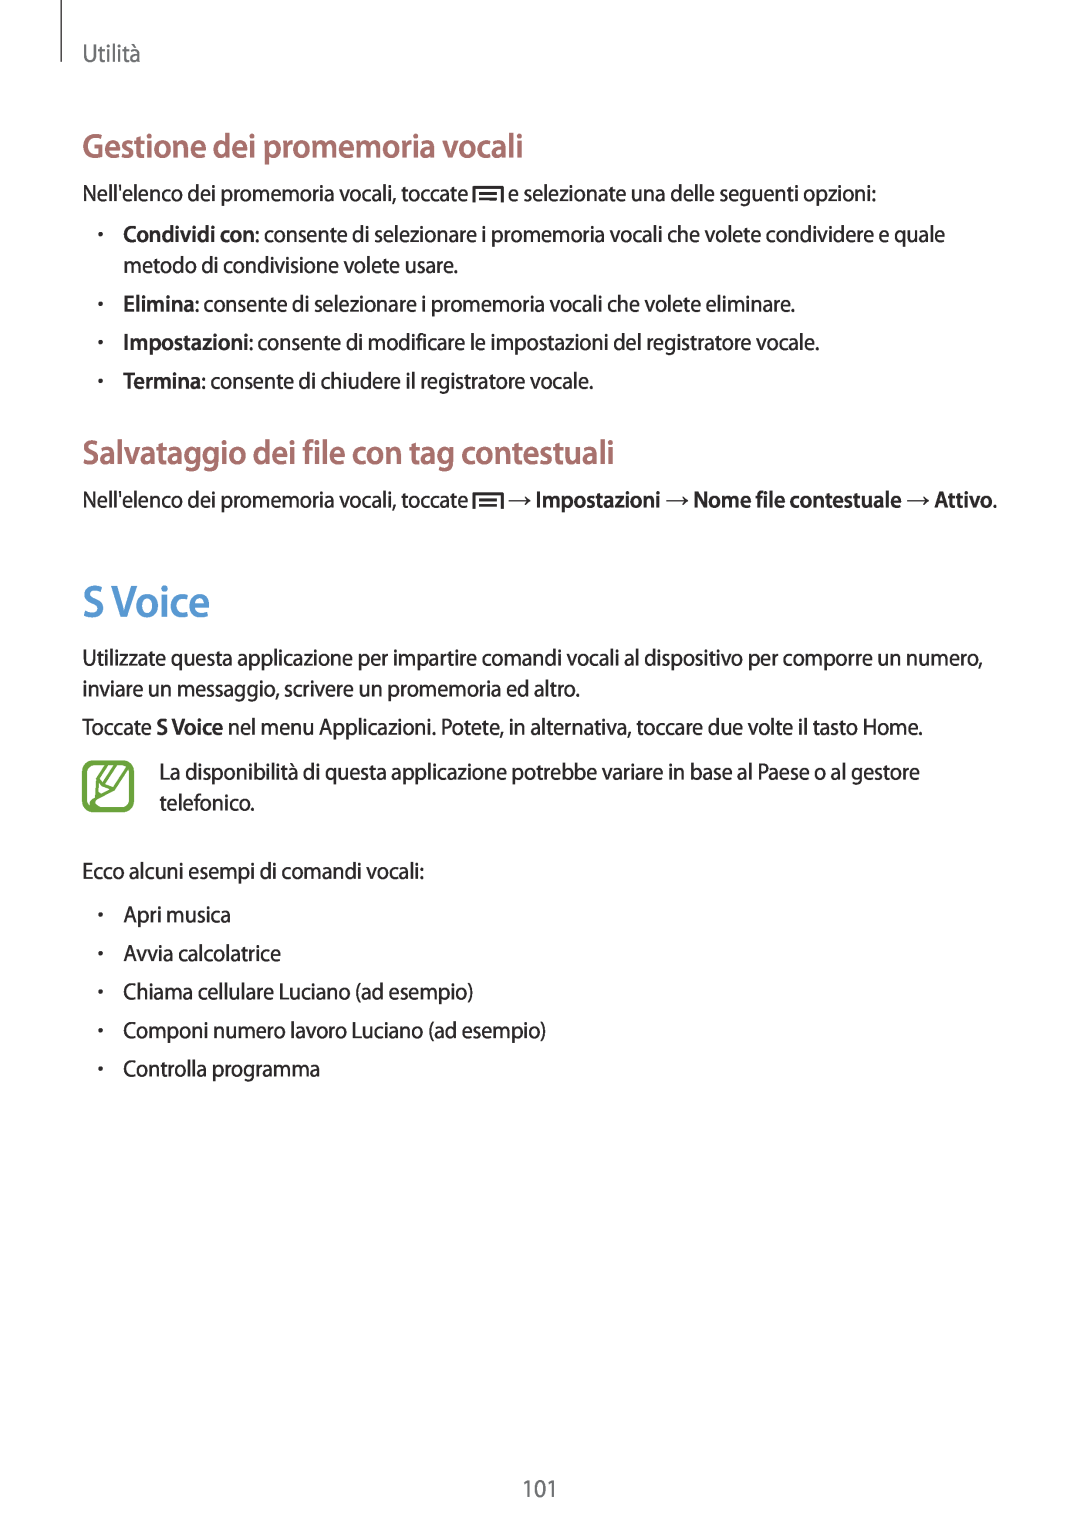 Samsung GT-I9195ZOAITV manual S Voice, Gestione dei promemoria vocali, Salvataggio dei file con tag contestuali, Utilità 